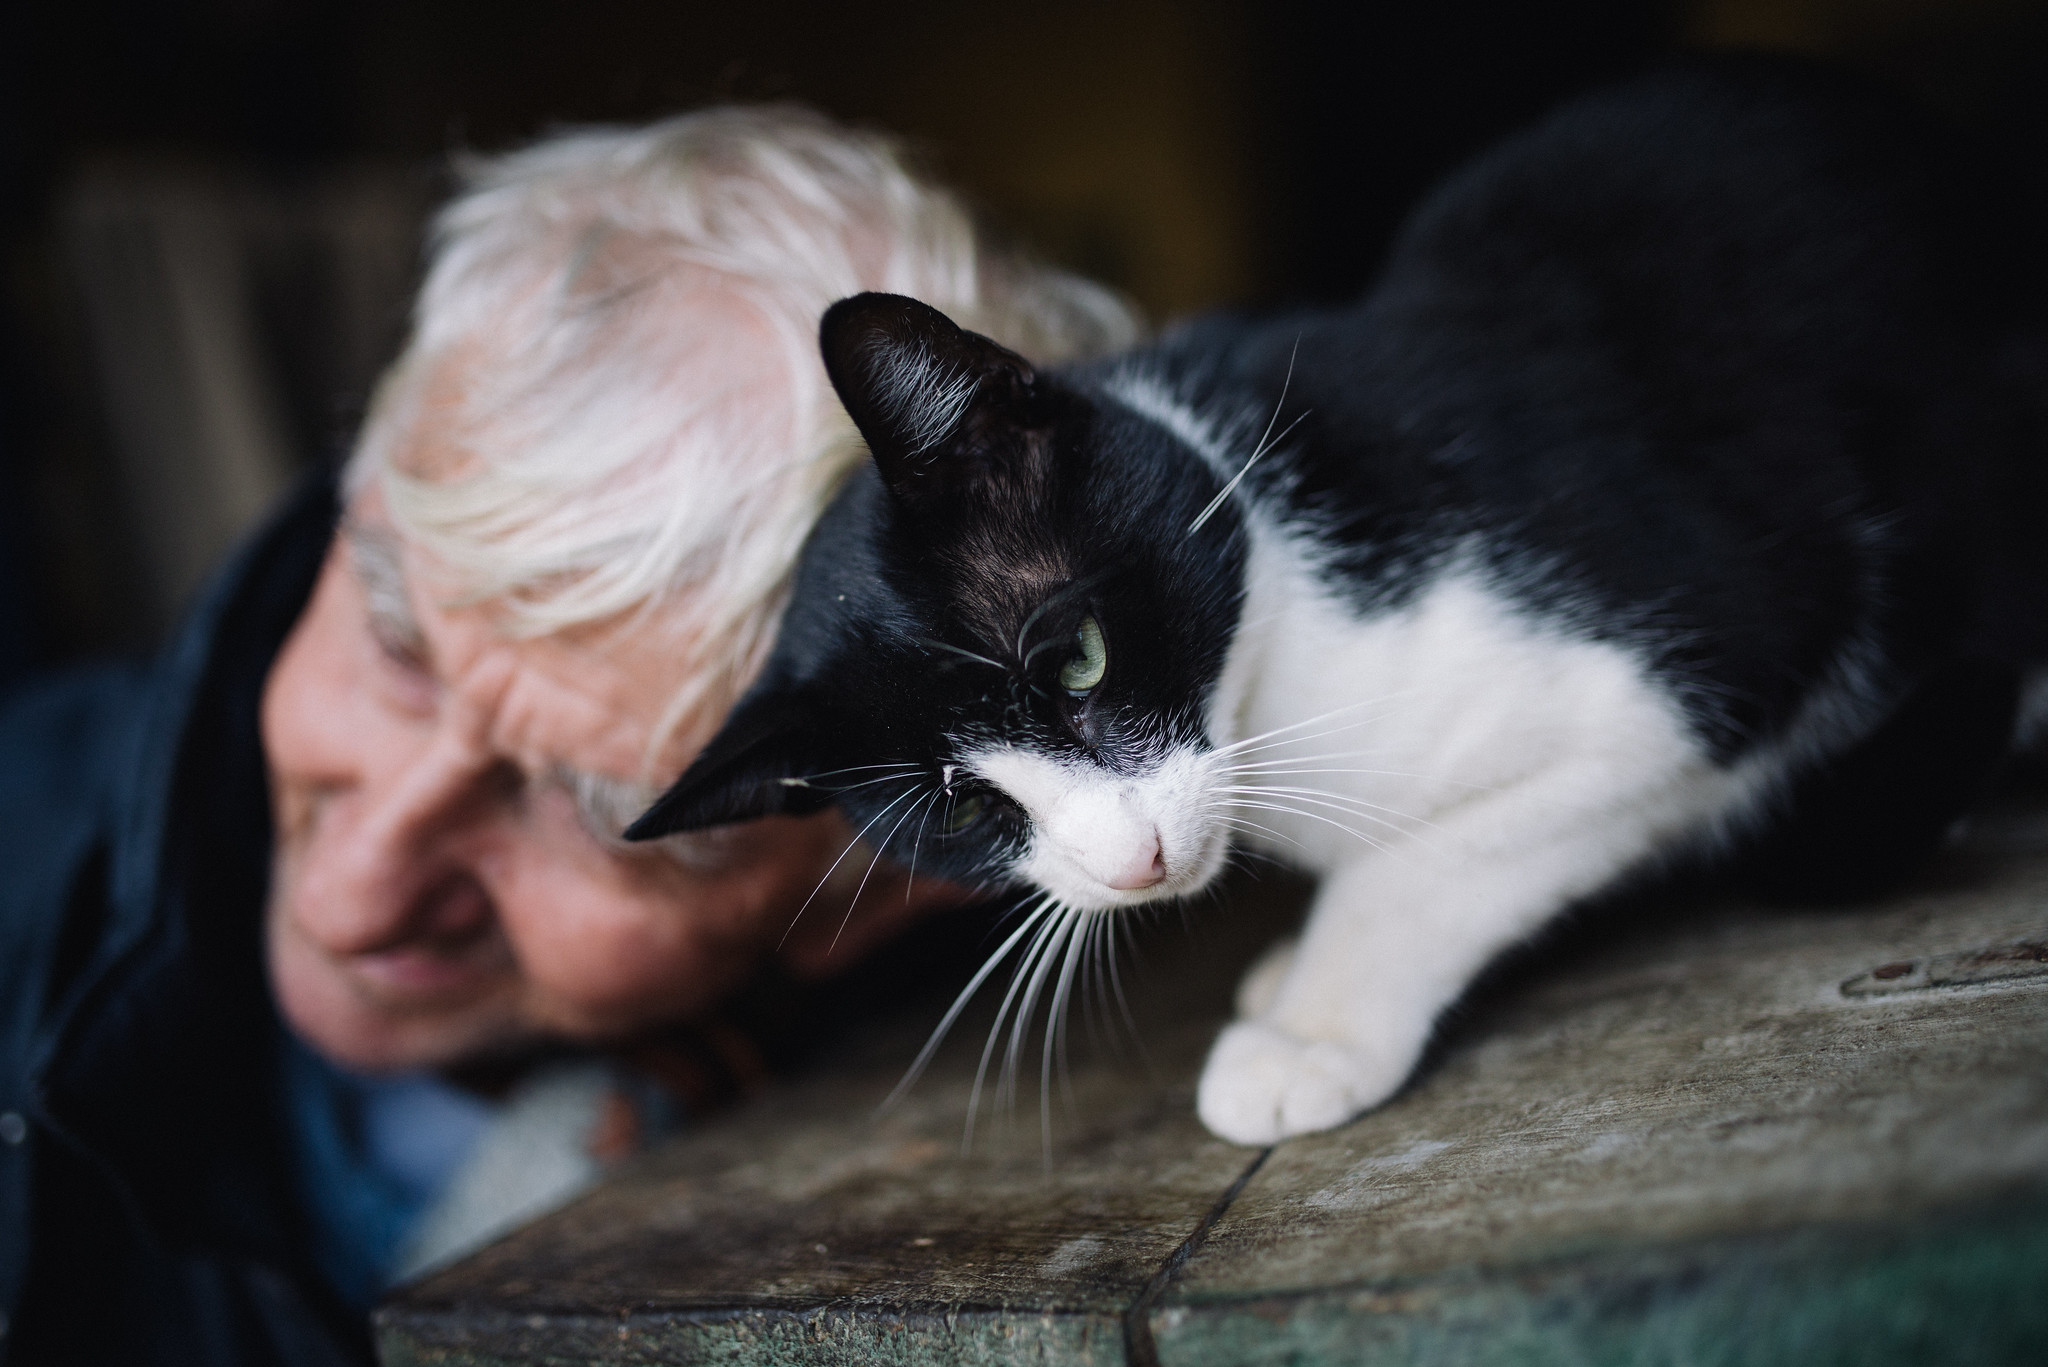 Gros plan d'un chat jouant avec un vieil homme | Source : Flickr/shixart1985